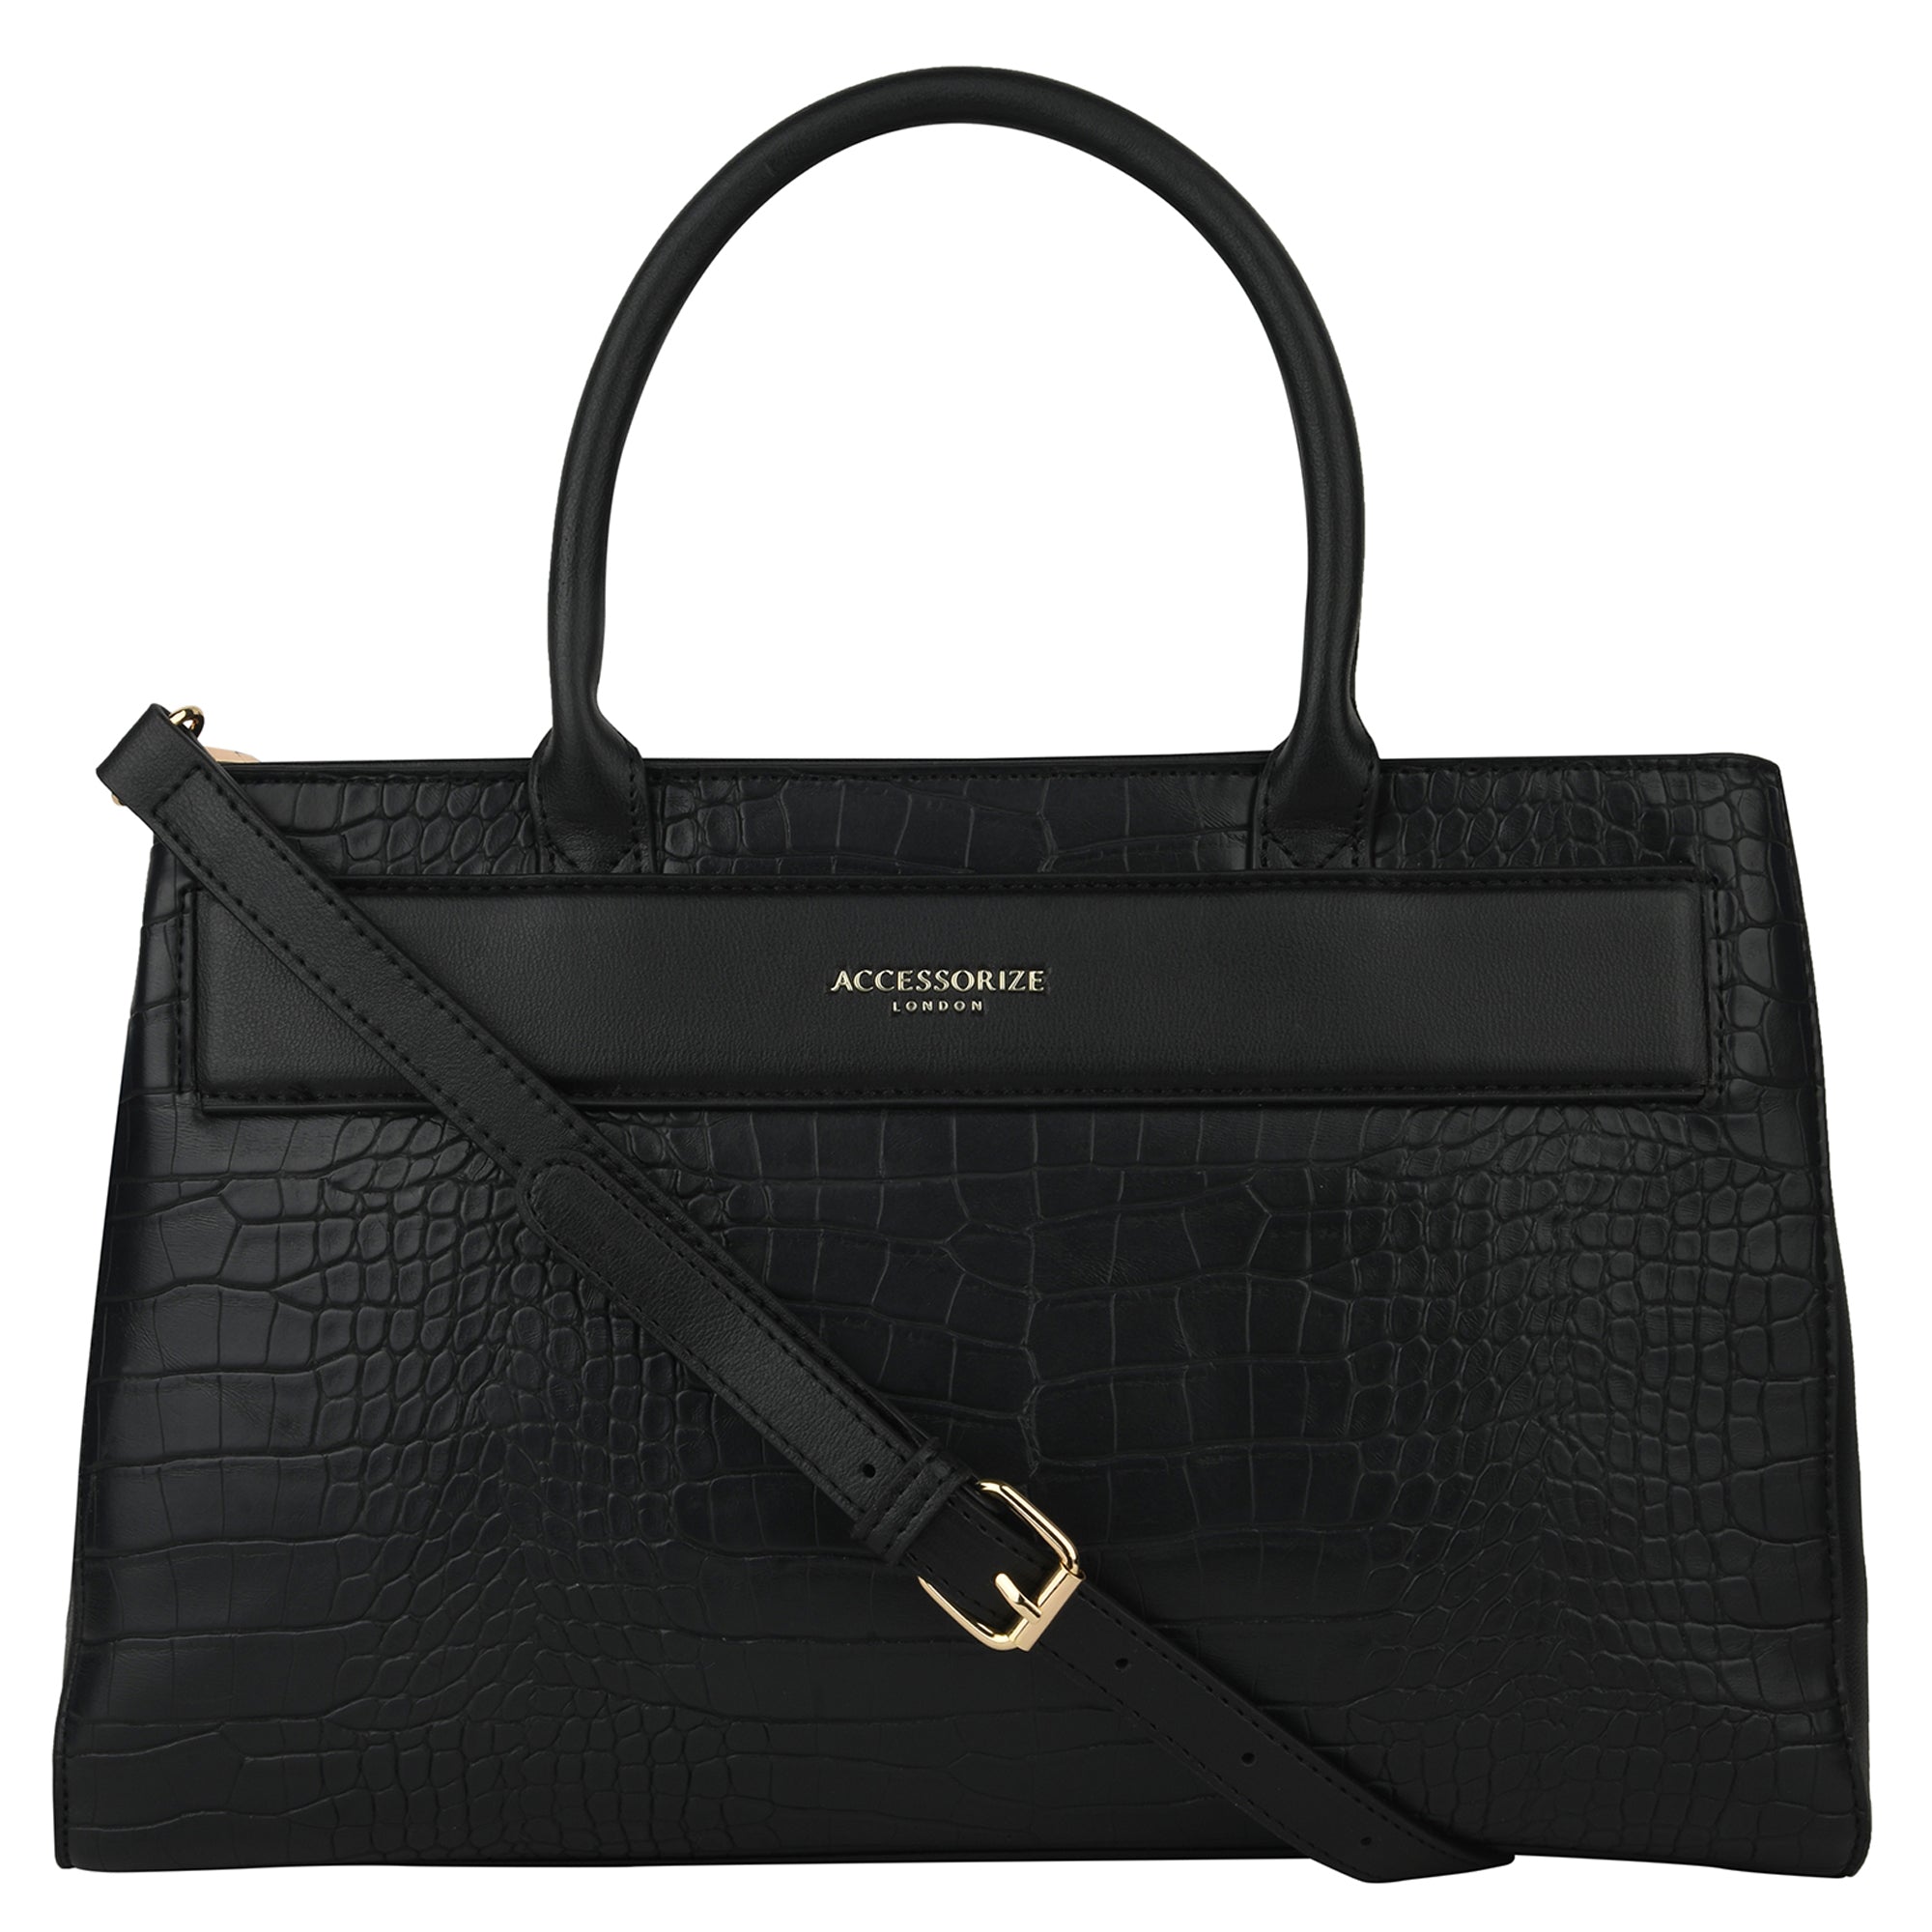 Accessorize London Women's Faux Leather Black Beetel Croc Handheld Bag